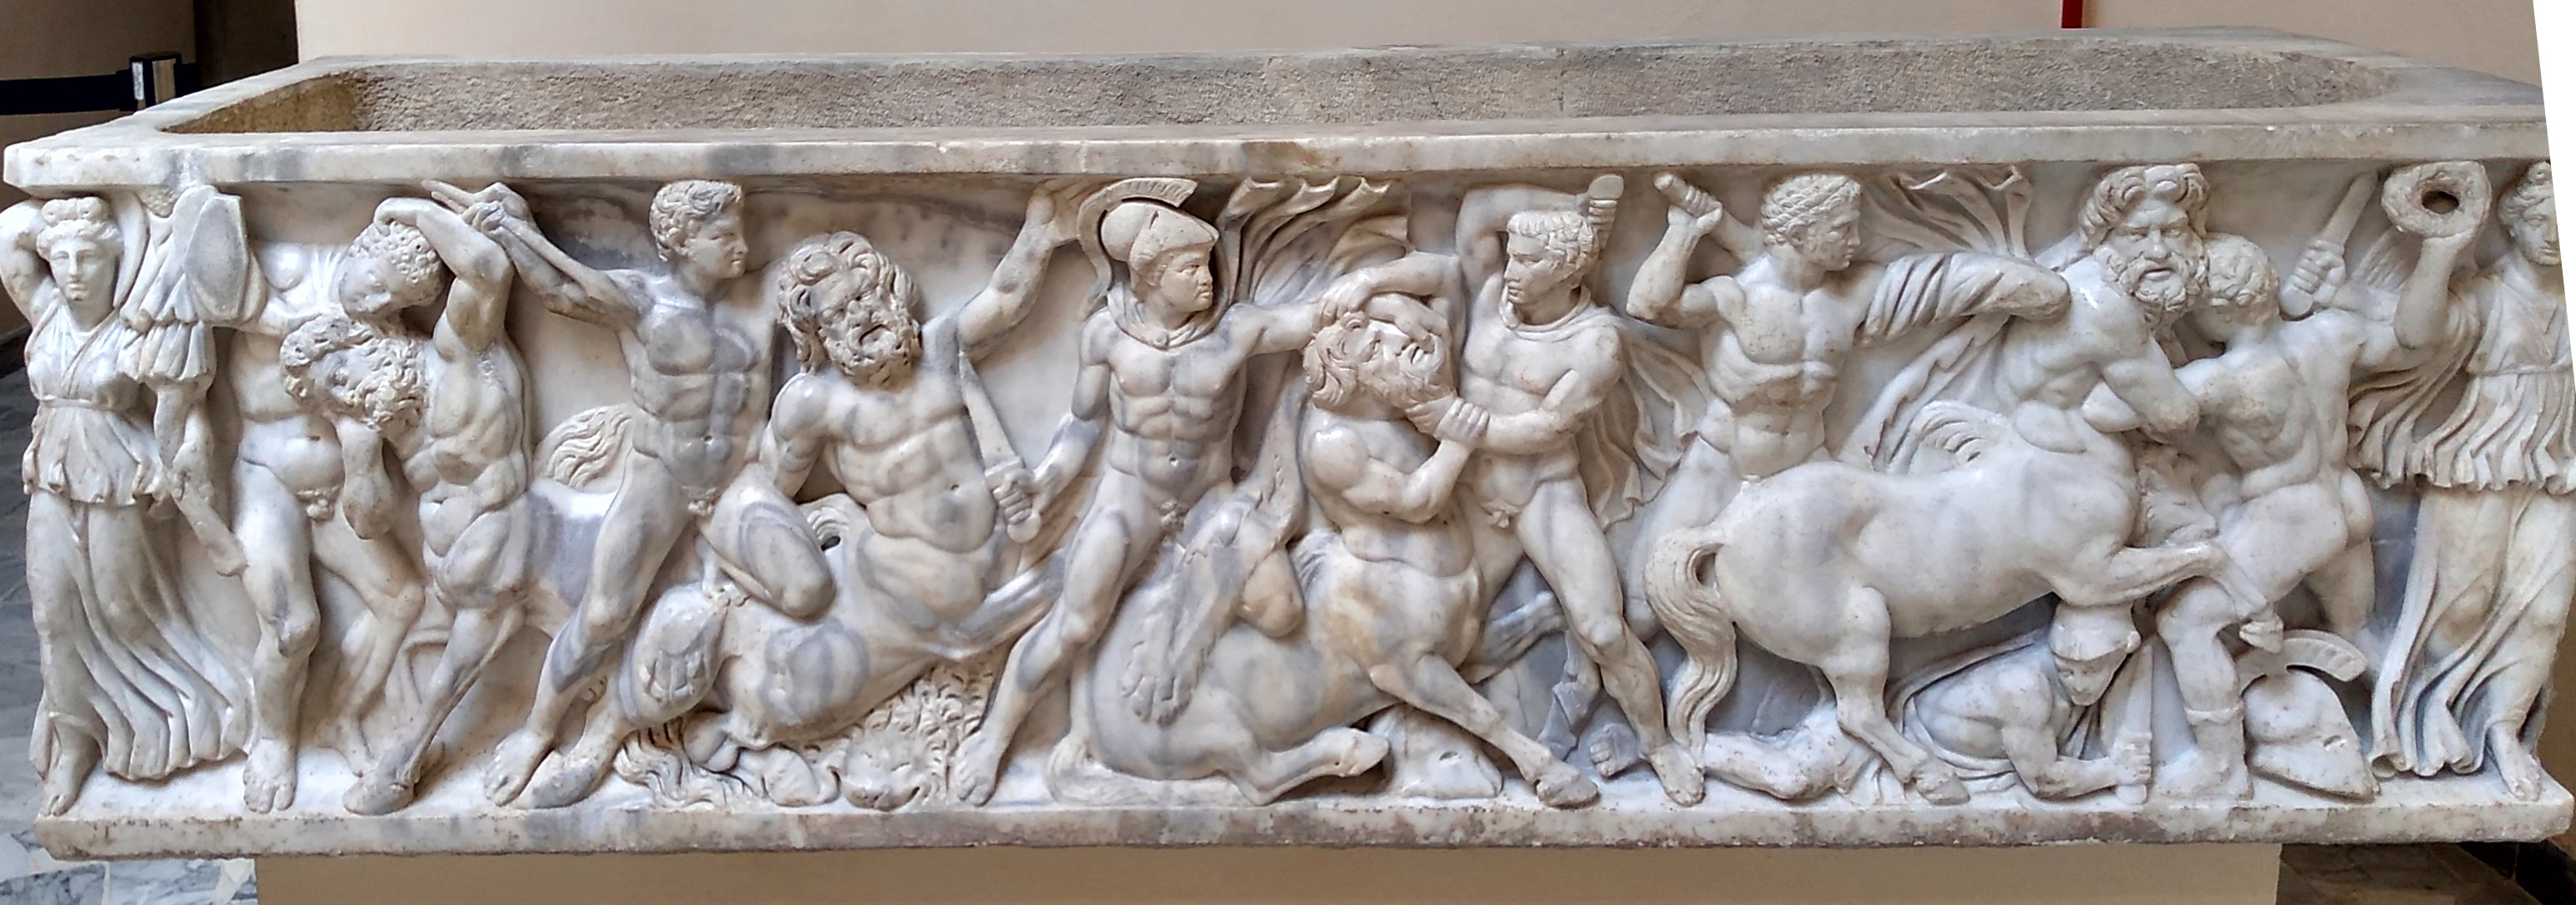 Sarkophag im Museum von Ostia